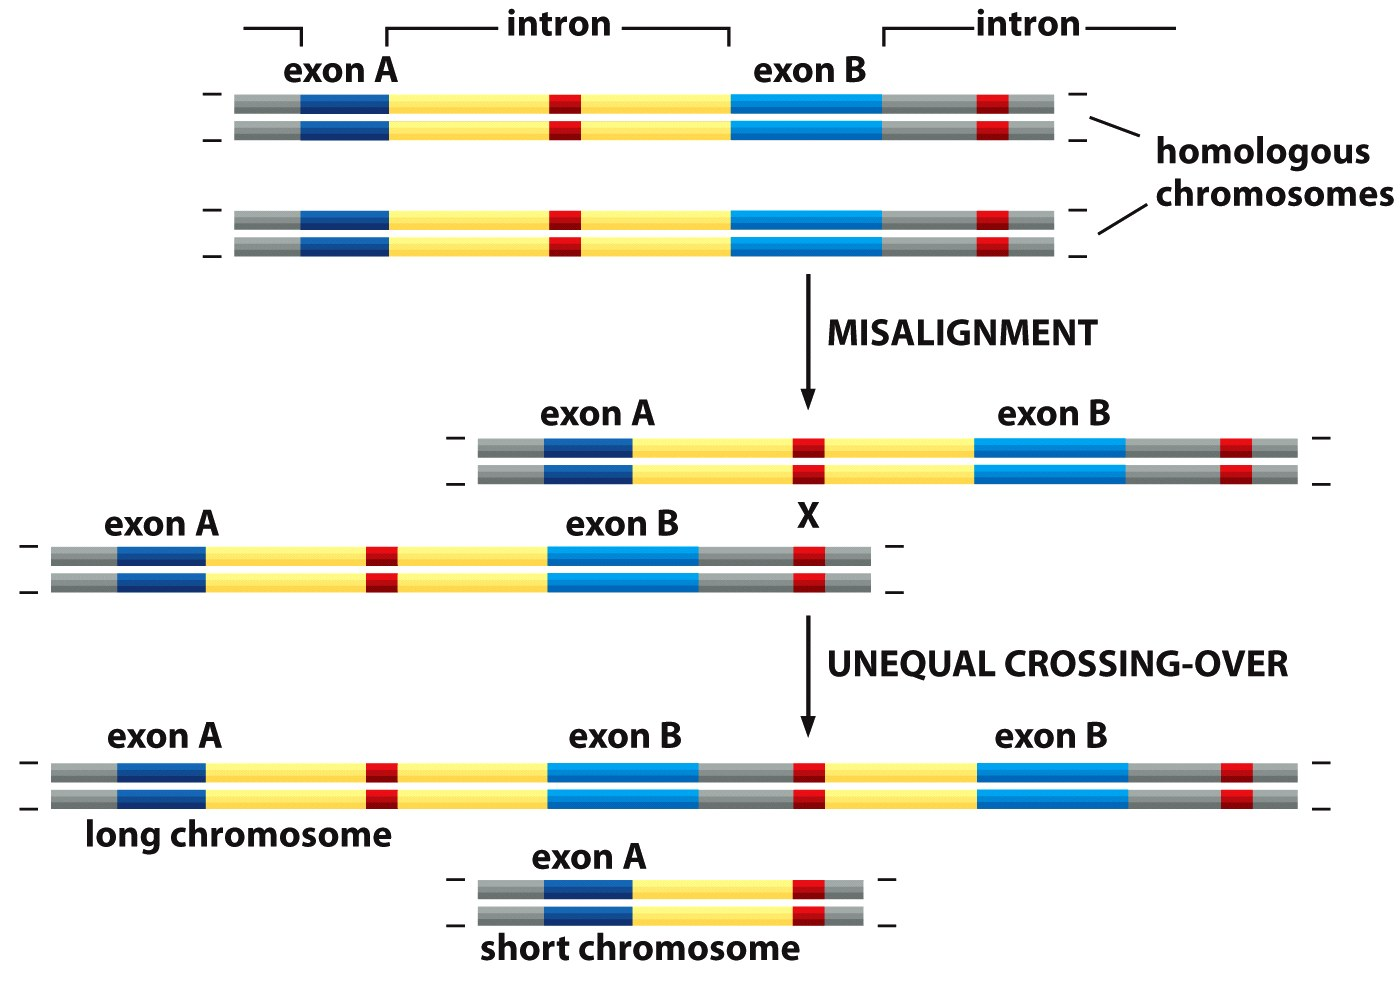 Le duplicazioni e rimescolamento degli esoni L organizzazione modulare dei geni in esoni e introni permeme facilmente la